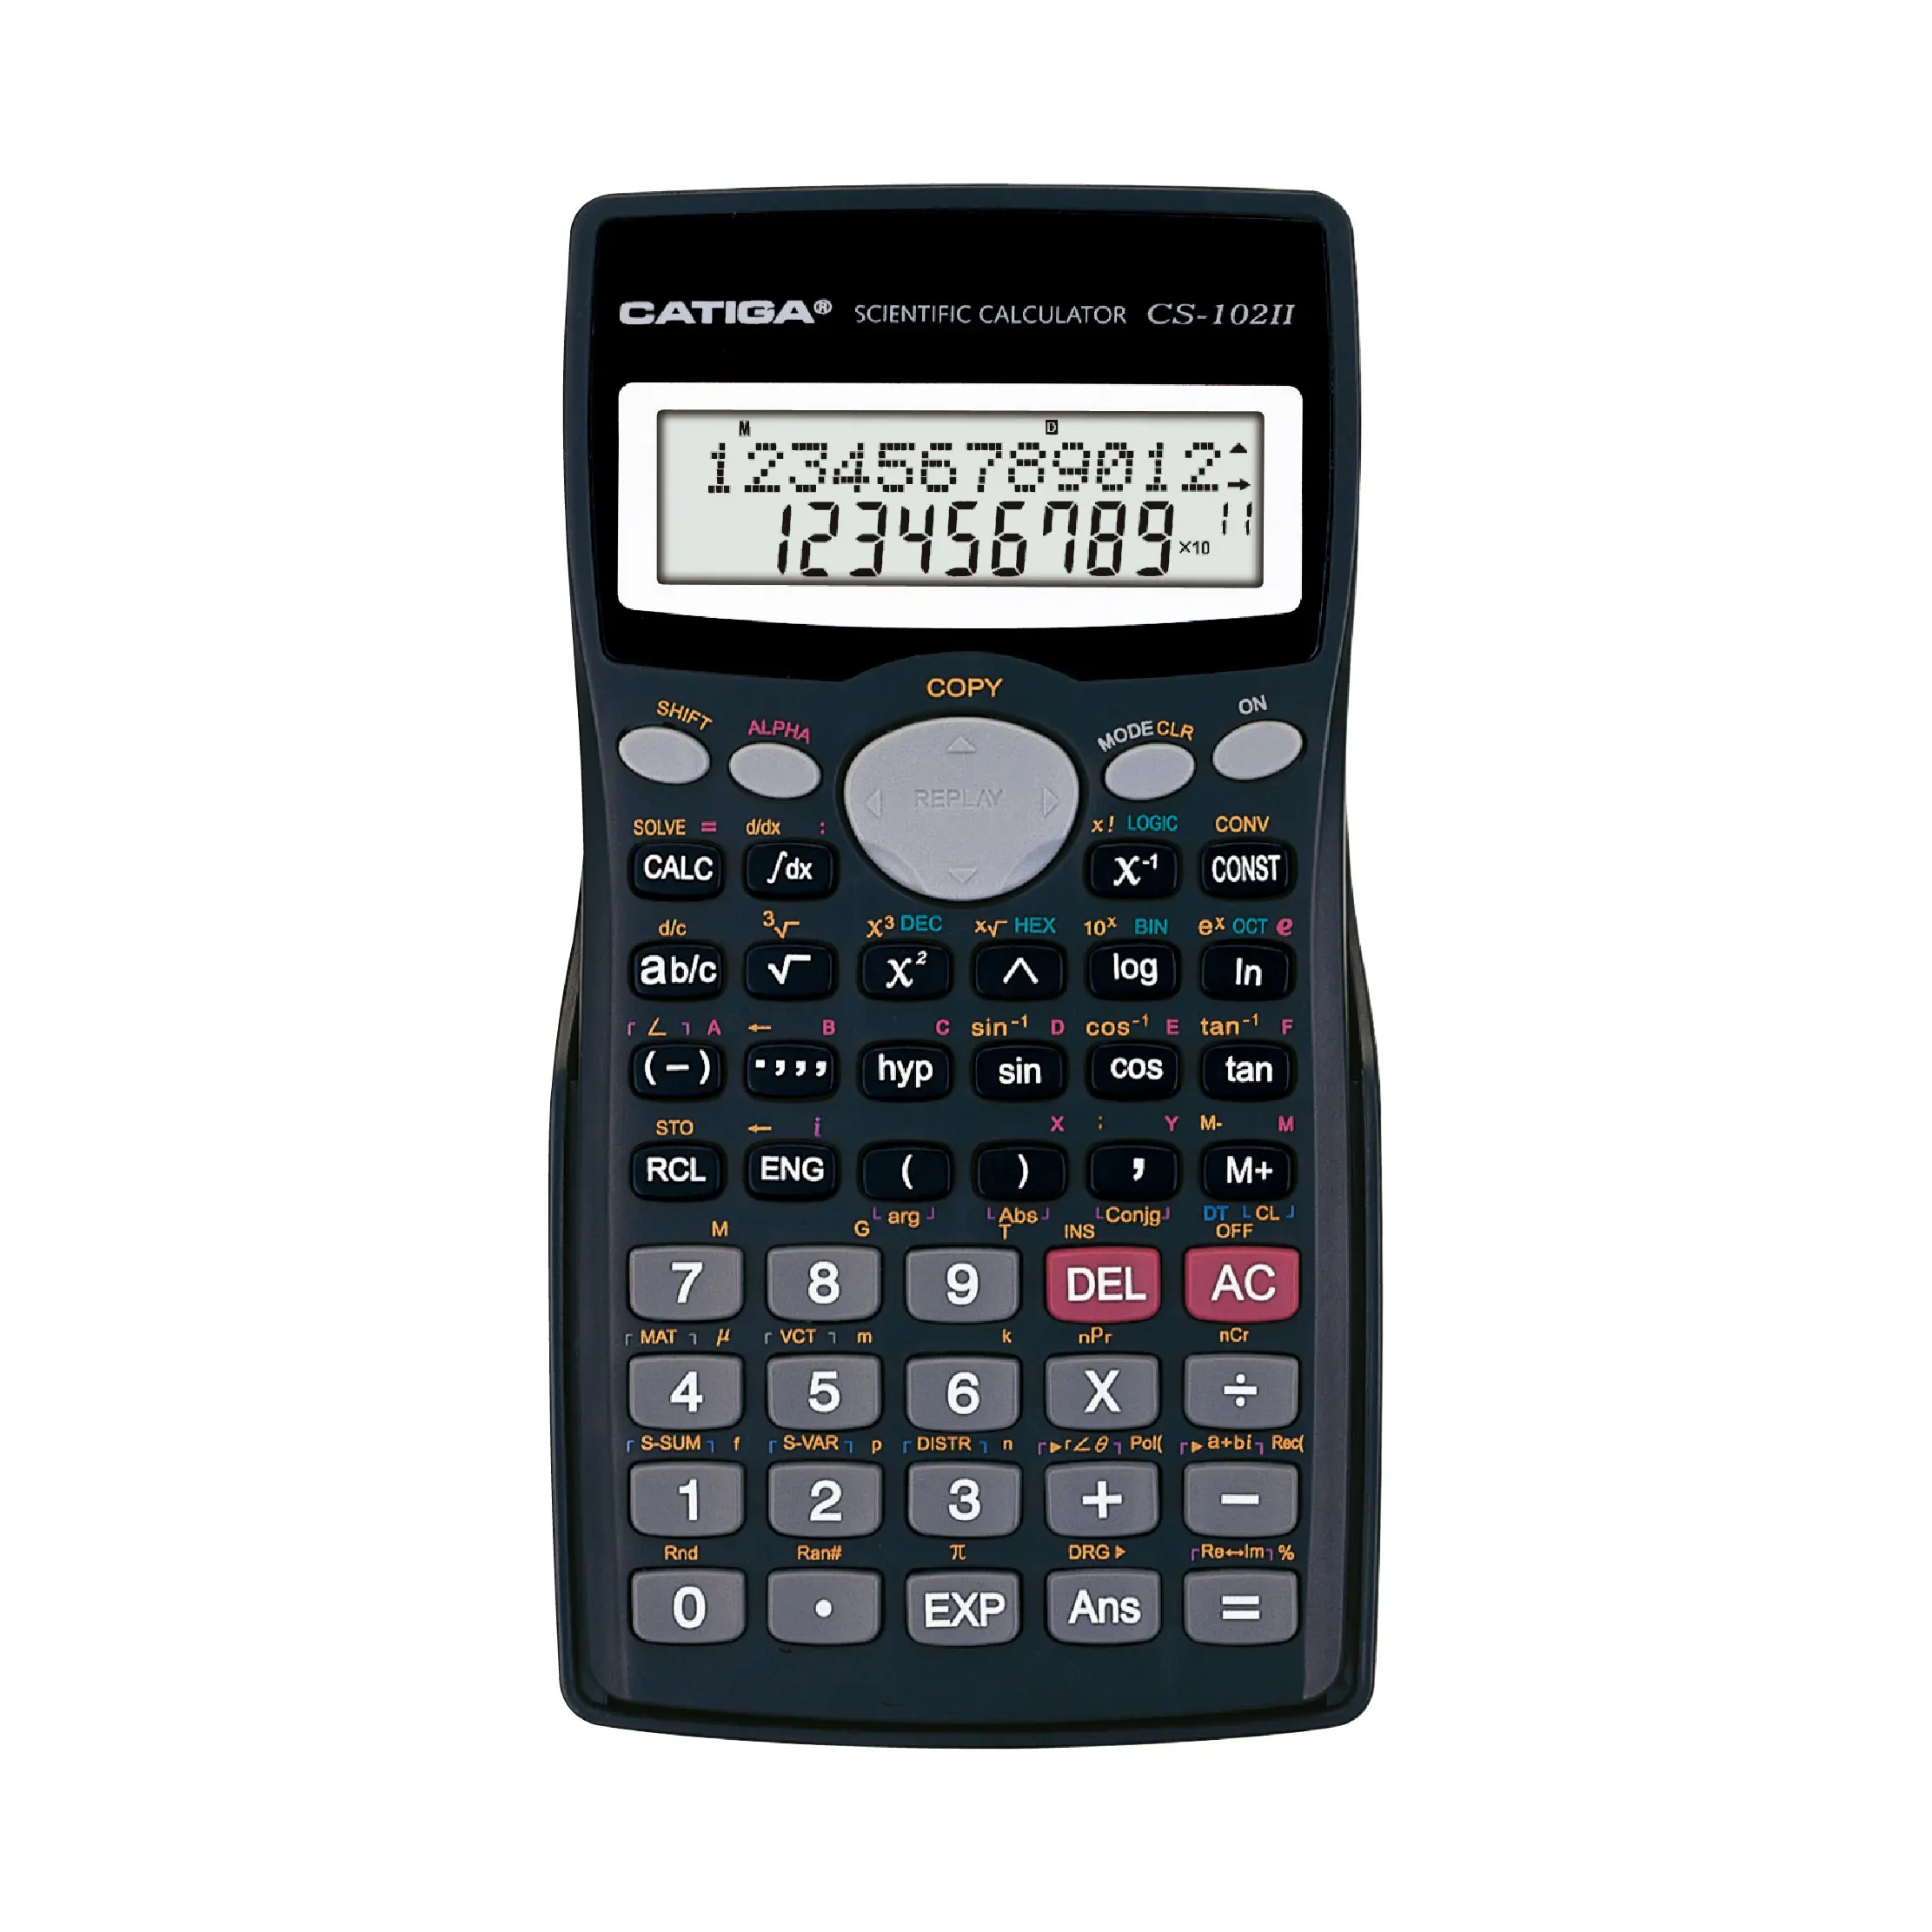 10 + 2 dígitos, 401 funciones CATIGA calculadora solar calculadora gráfica científica Calculadora científica